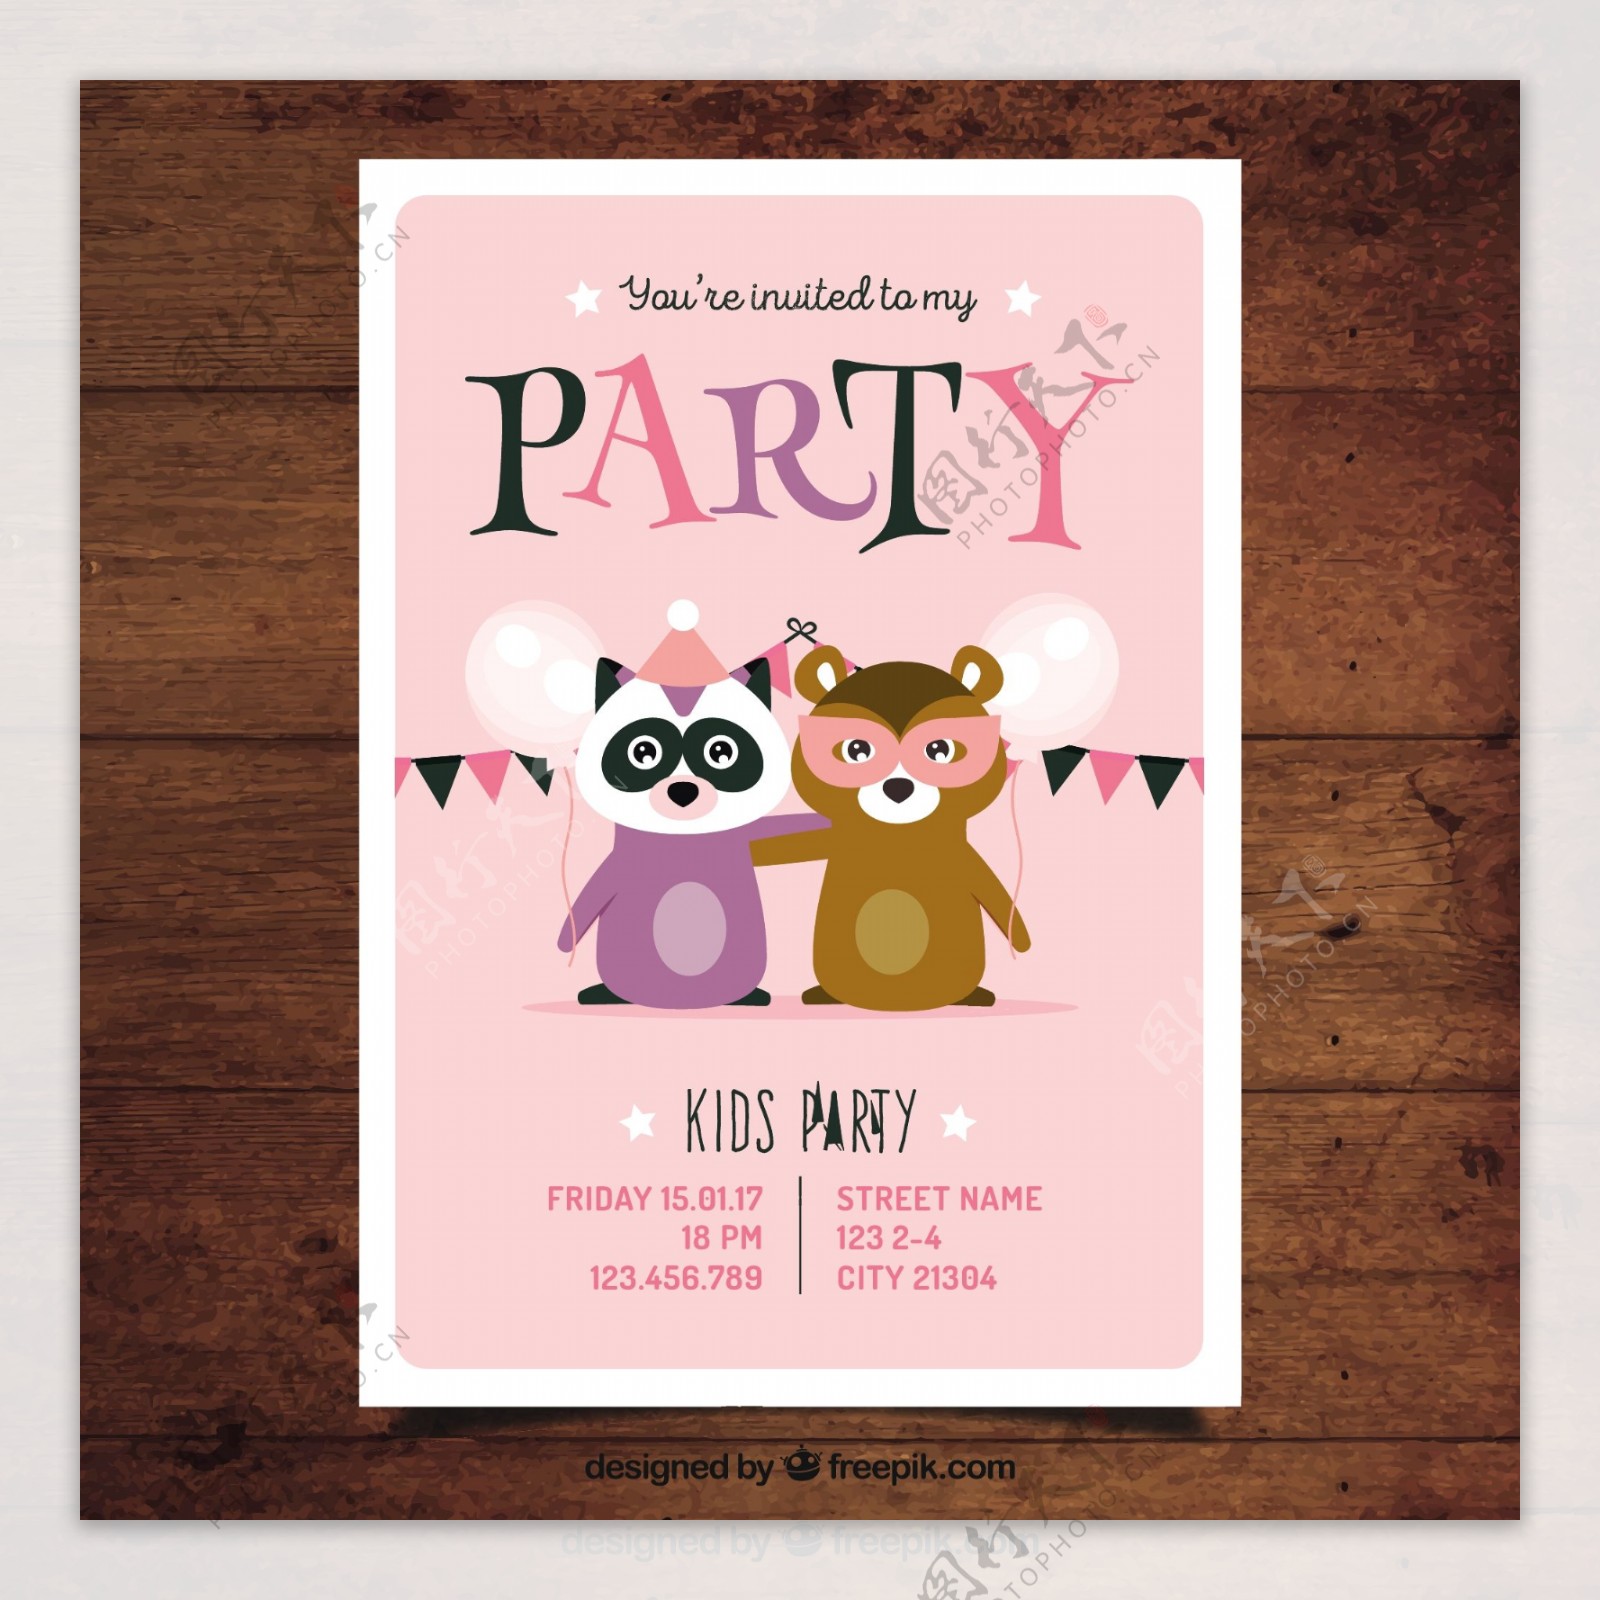 派对邀请模板与动物